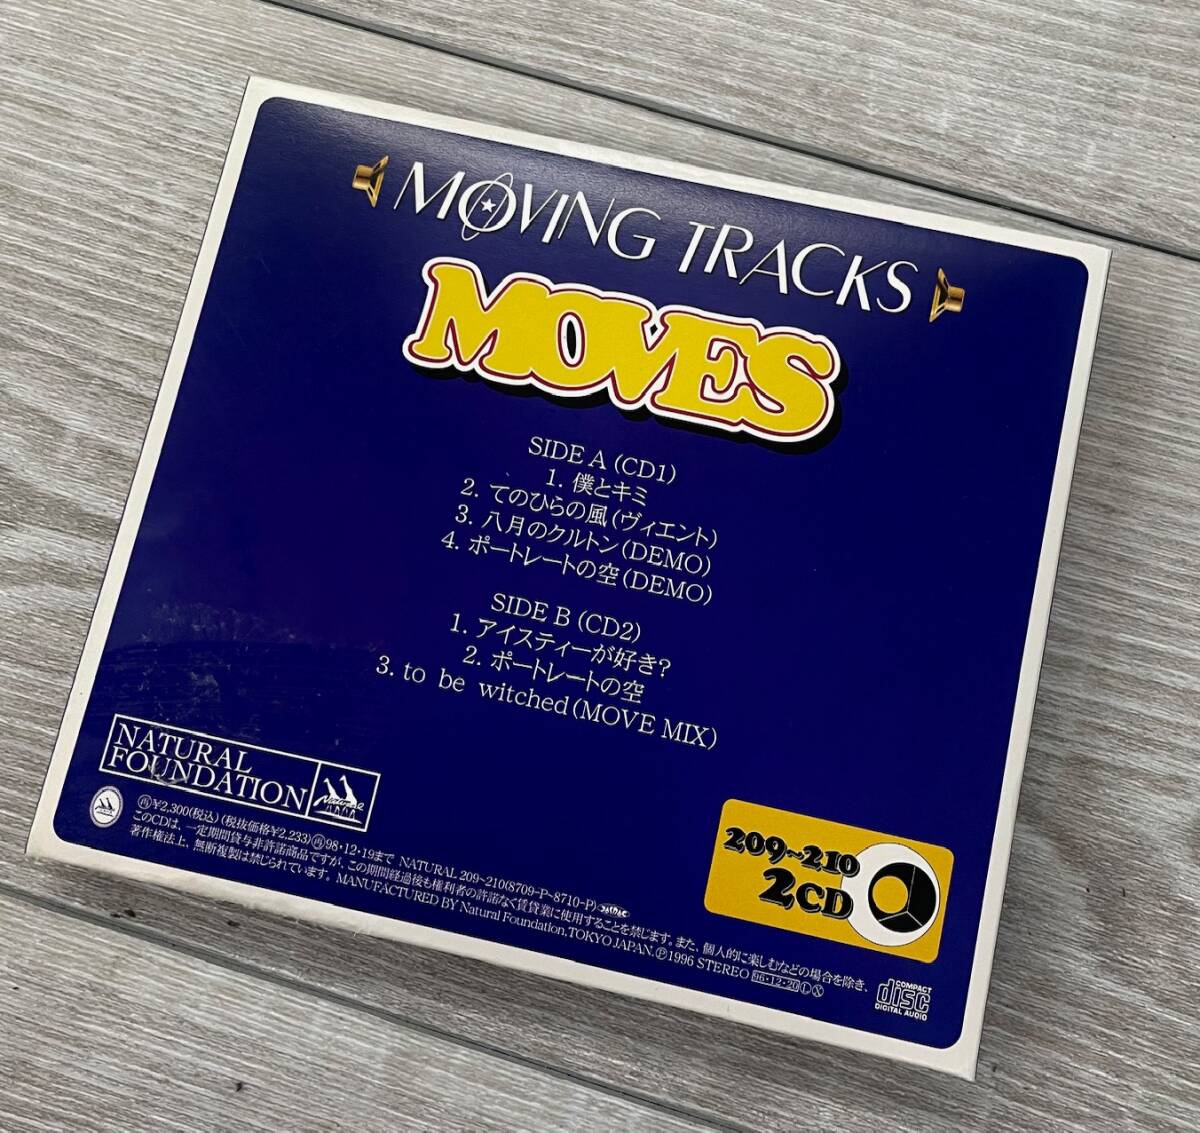 MOVES - MOVING TRACKS (ナチュラル・ファウンデーション'96 / 7traks. 2CD 見開き仕様 )の画像5